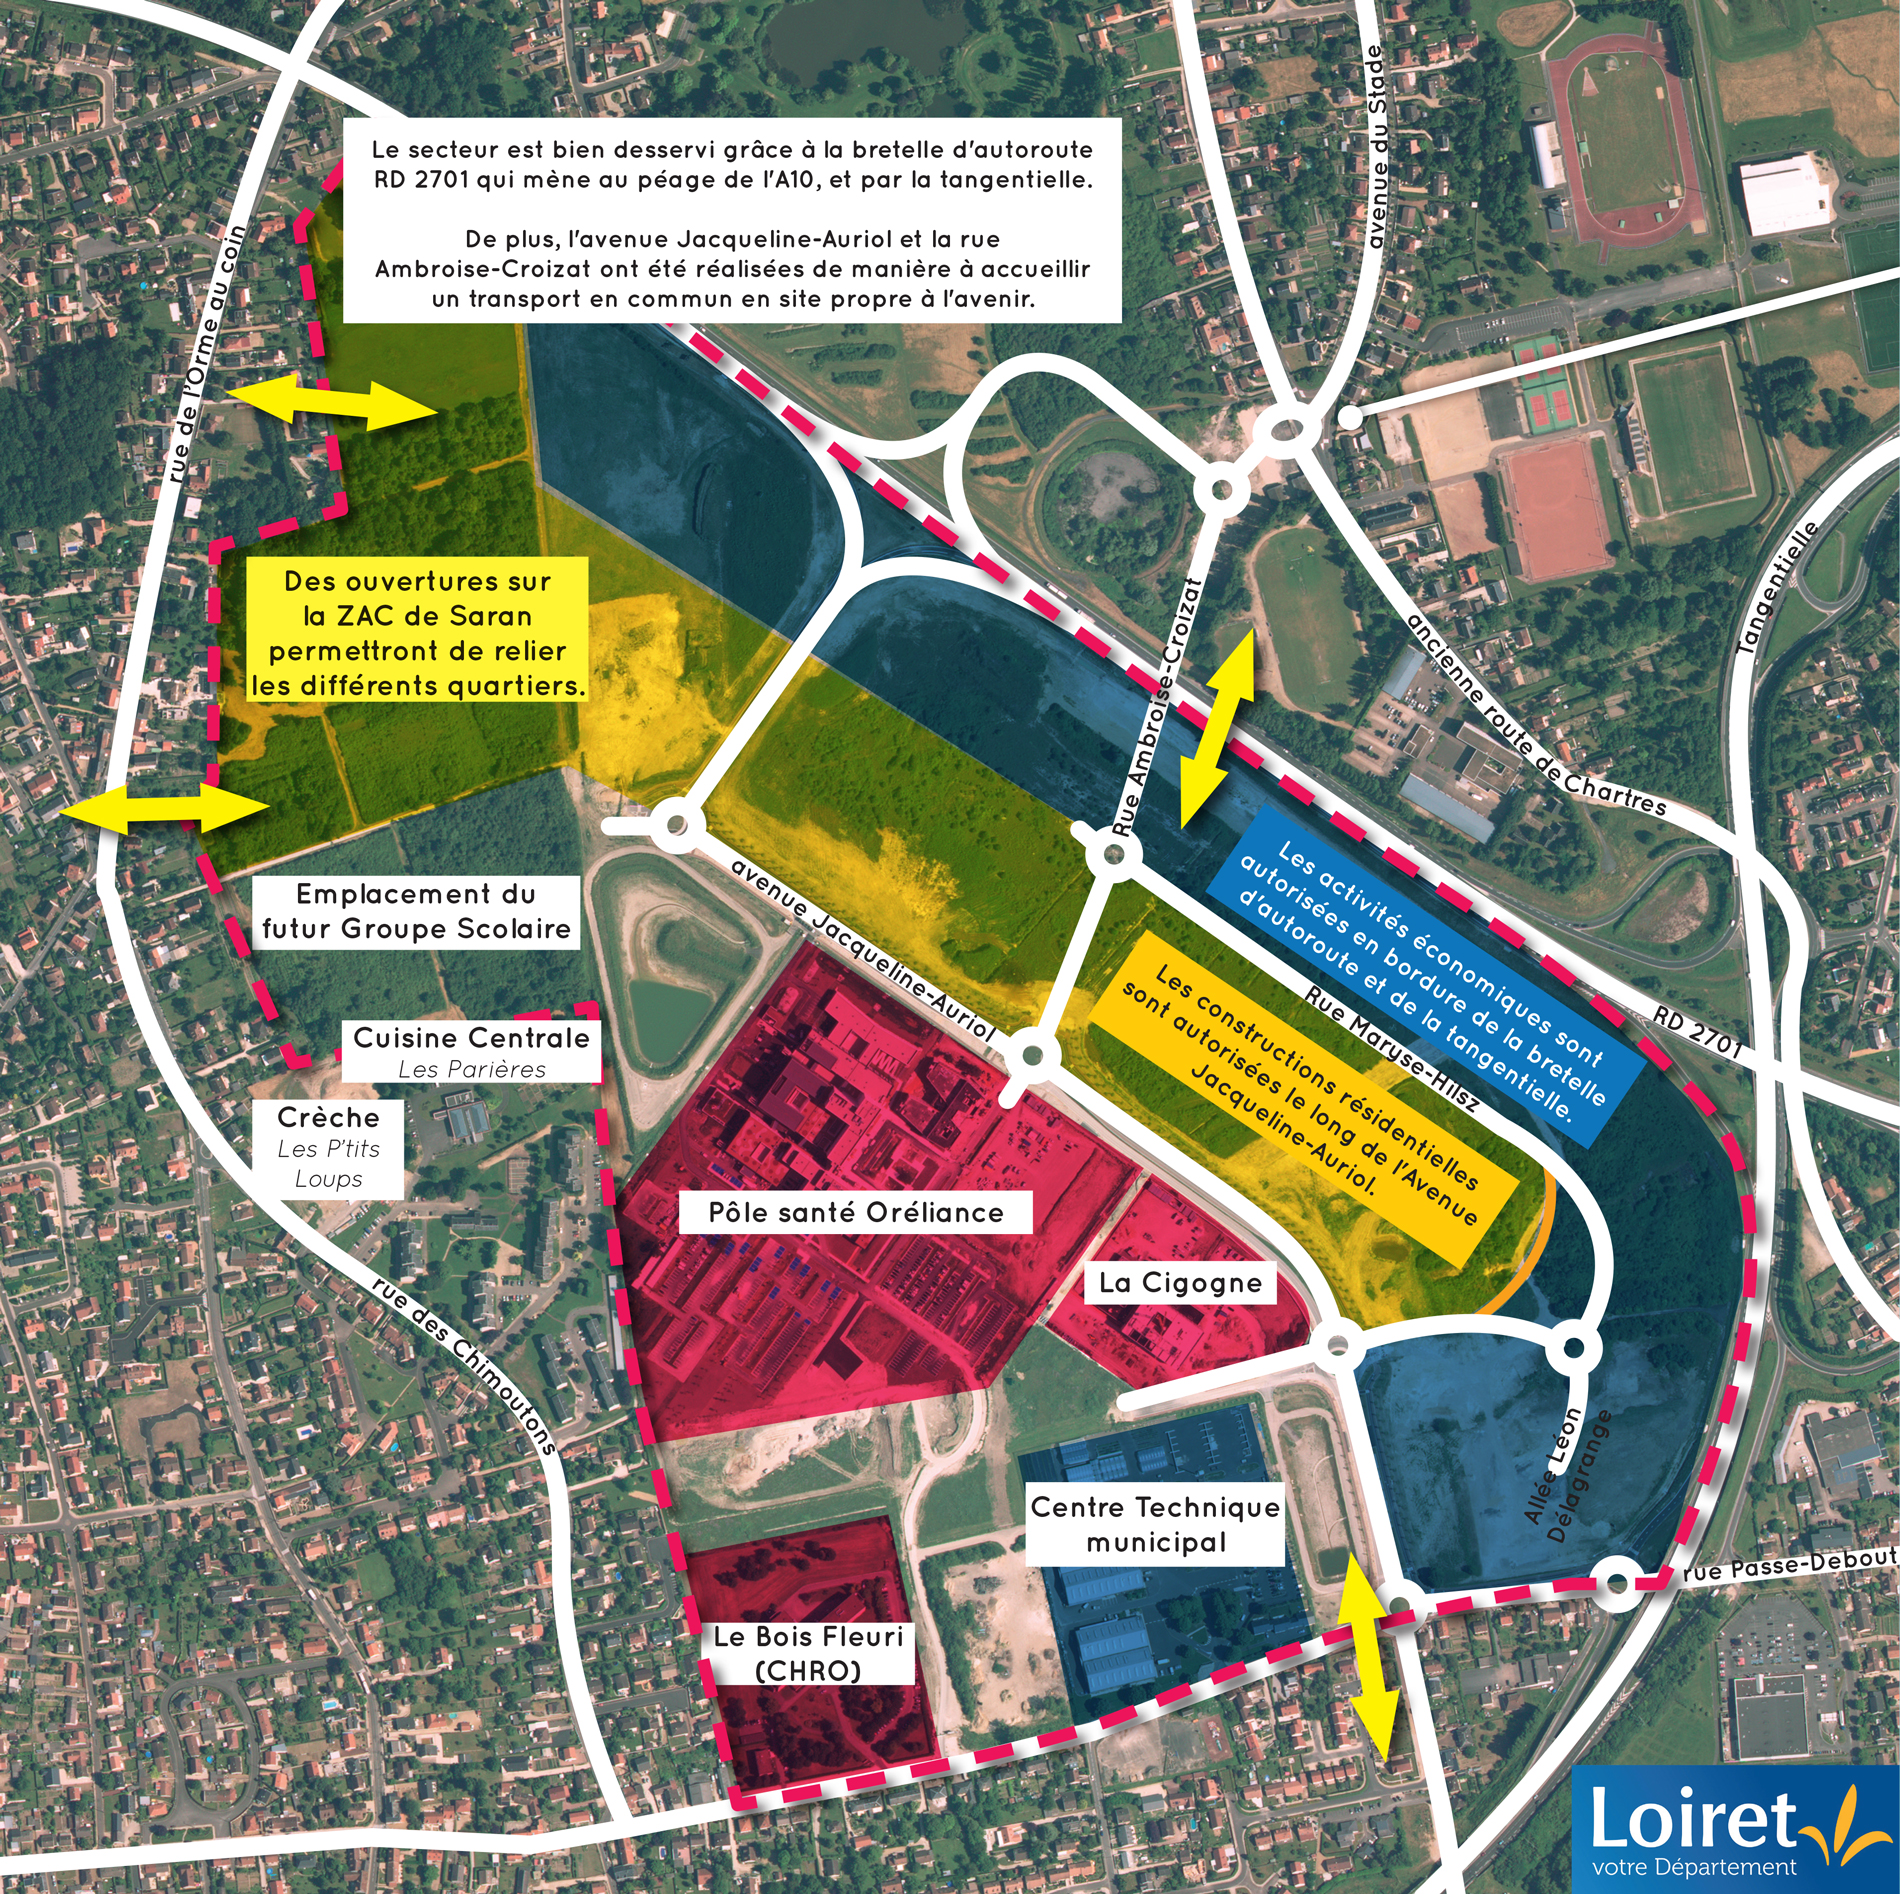 Plan d'aménagement de la Zone d'aménagement concertée des Portes du Loiret